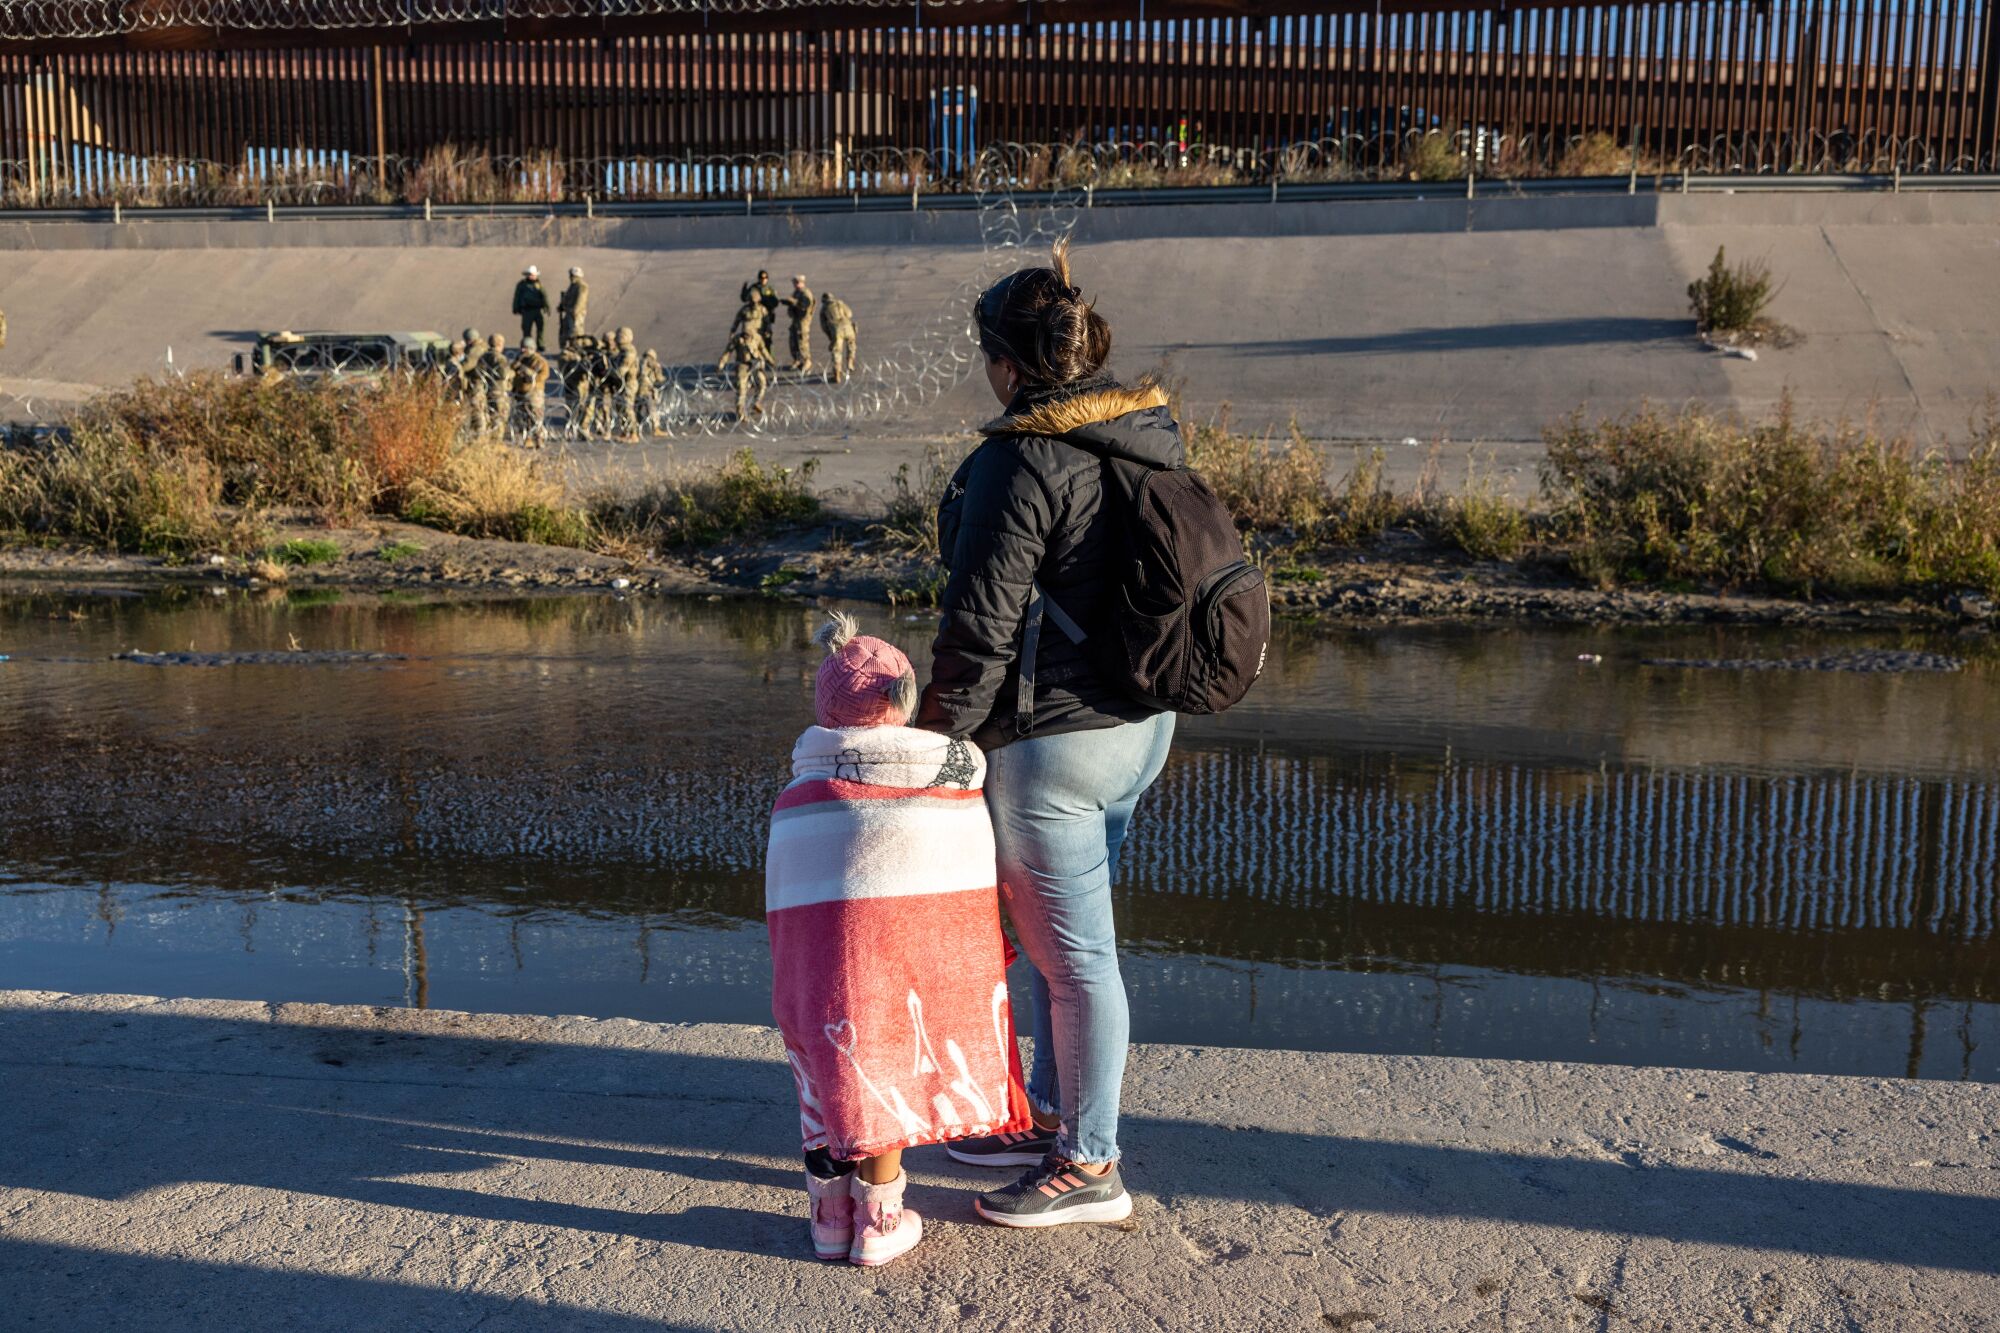 زن و کودکی به مردان یونیفرم پوش پشت حلقه های سیم کنسرتینا در عرض کانال رودخانه نگاه می کنند 